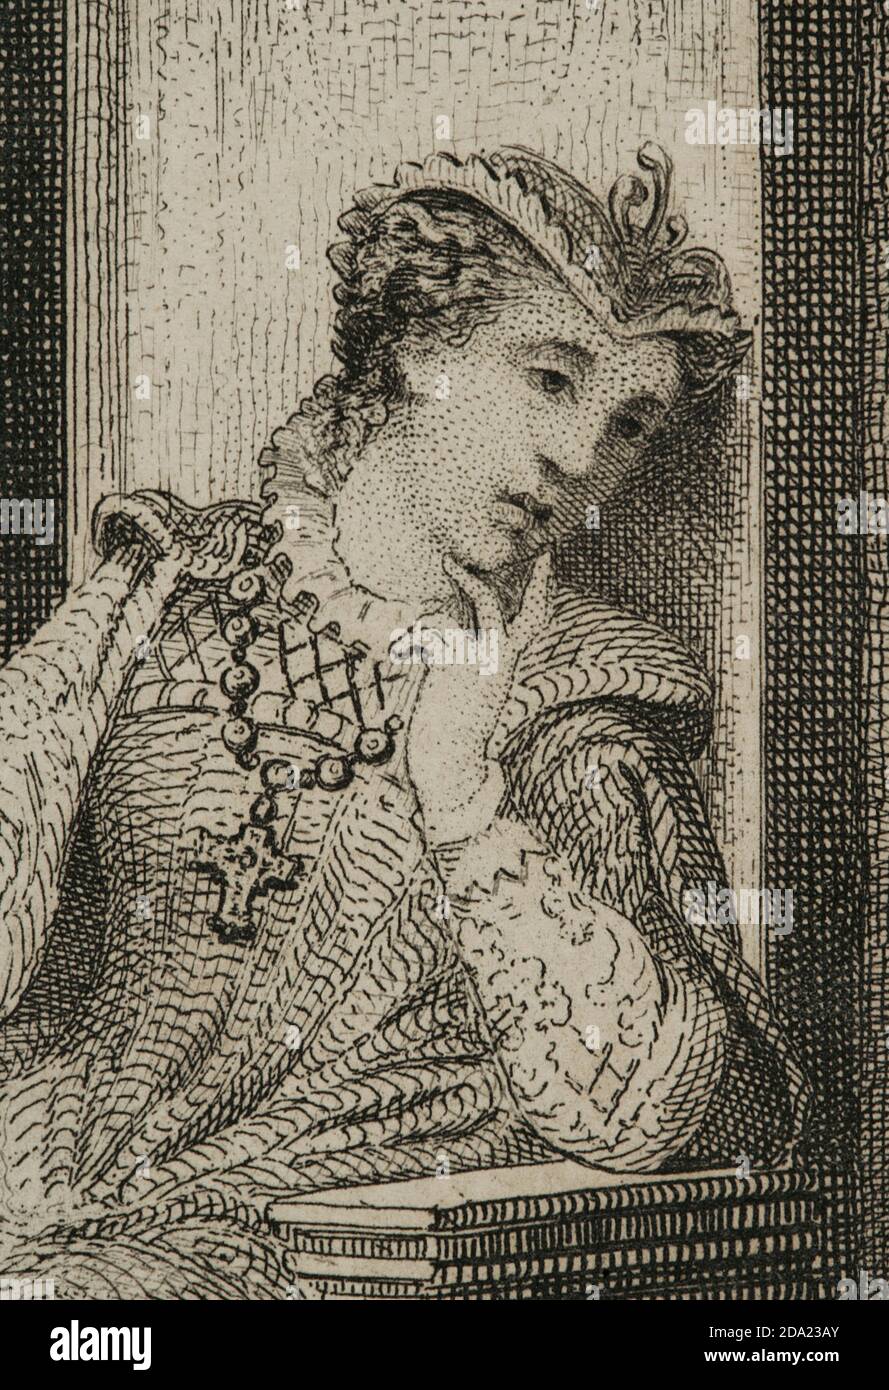 Maria Estuardo. Maria i de Escocia (1542-1587). Reina de Escocia (1542-1567). Tras su matrimonio con Francisco II de Francia, ocupó a lado el trono de Francia (1559). Estuvo dieciocho años prisionera y fué condenada a muerte por conspirar contra la vida de la reina de Inglaterra. En febrero de 1587 la reina Isabel i de Inglaterra ordenó decapitar a María Estuardo, muriendo como una mártir católica. Ritrato. De un grabado en la que la reina escucha la música interpretada por David Rizzzio (1533-1566), cortesano english secretario privado de María Estuardo. Por J. fu Foto Stock